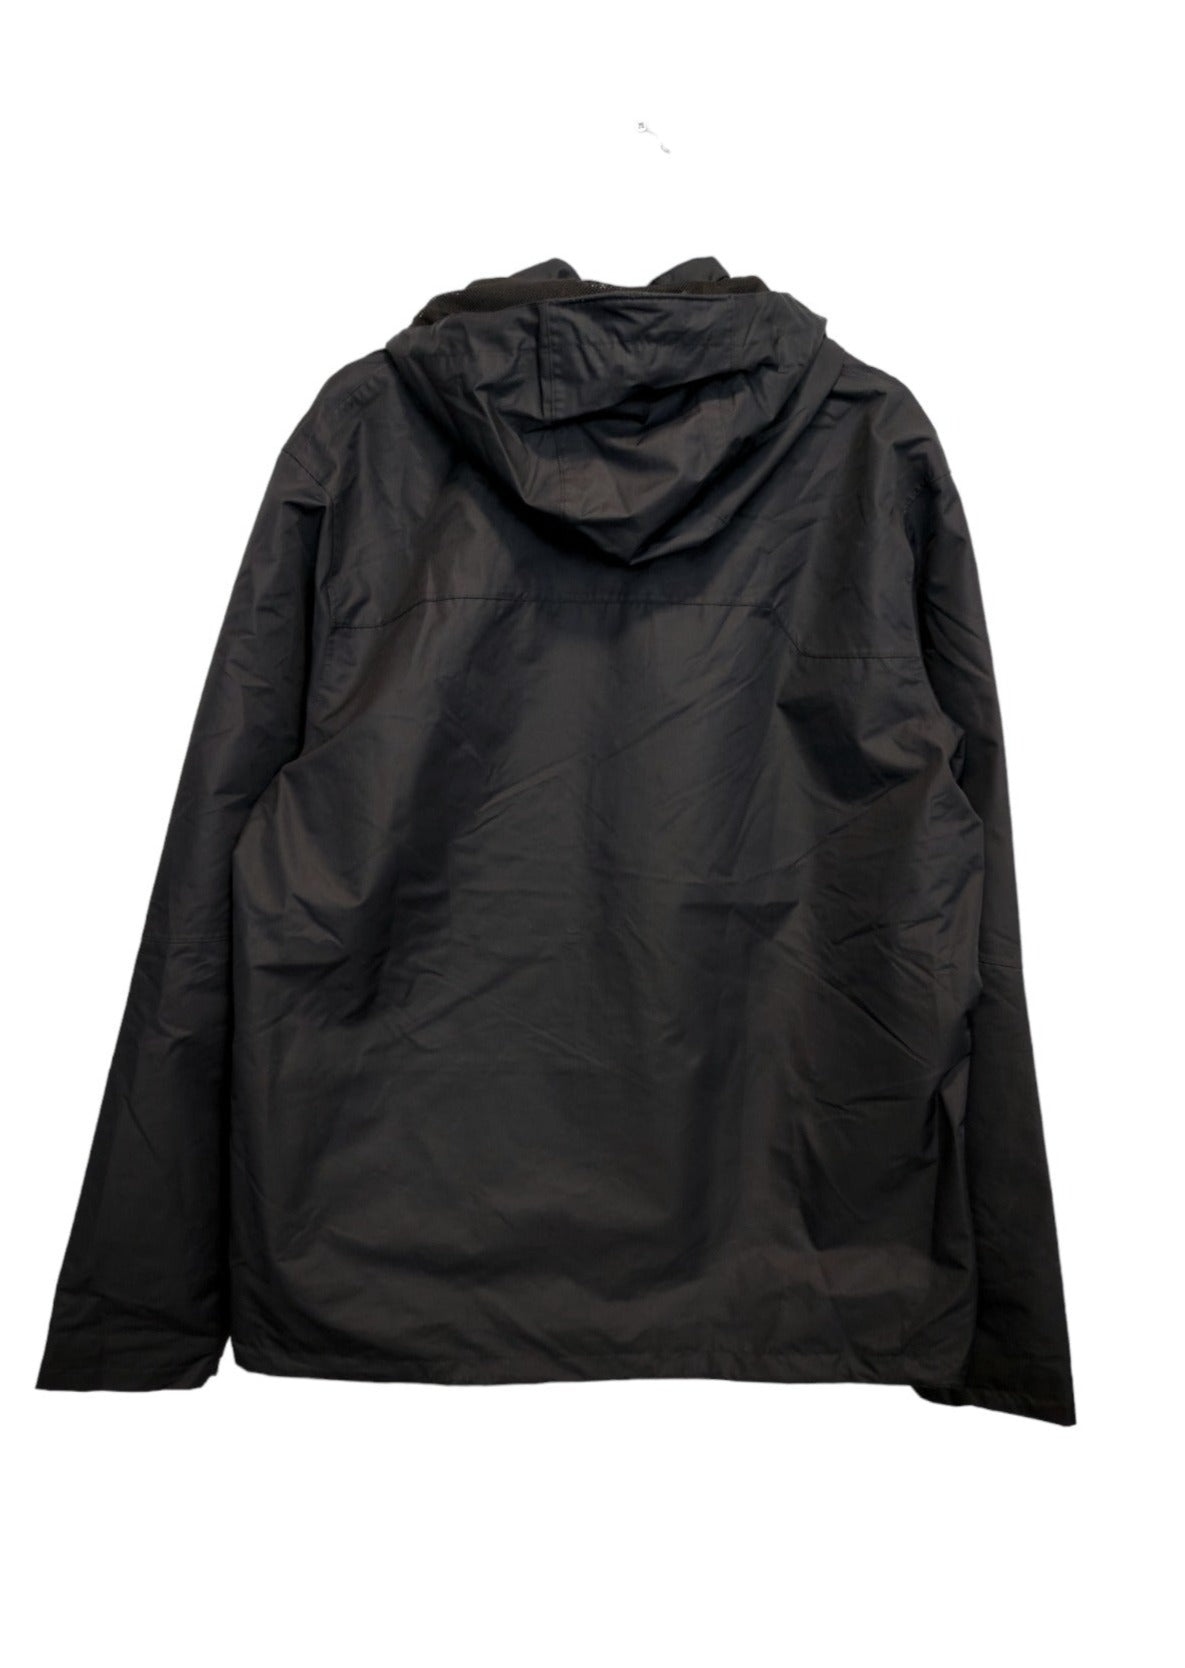 Ανδρικό, αδιάβροχο Αθλητικό Μπουφάν DECATHLON σε Μαύρο χρώμα (XL)